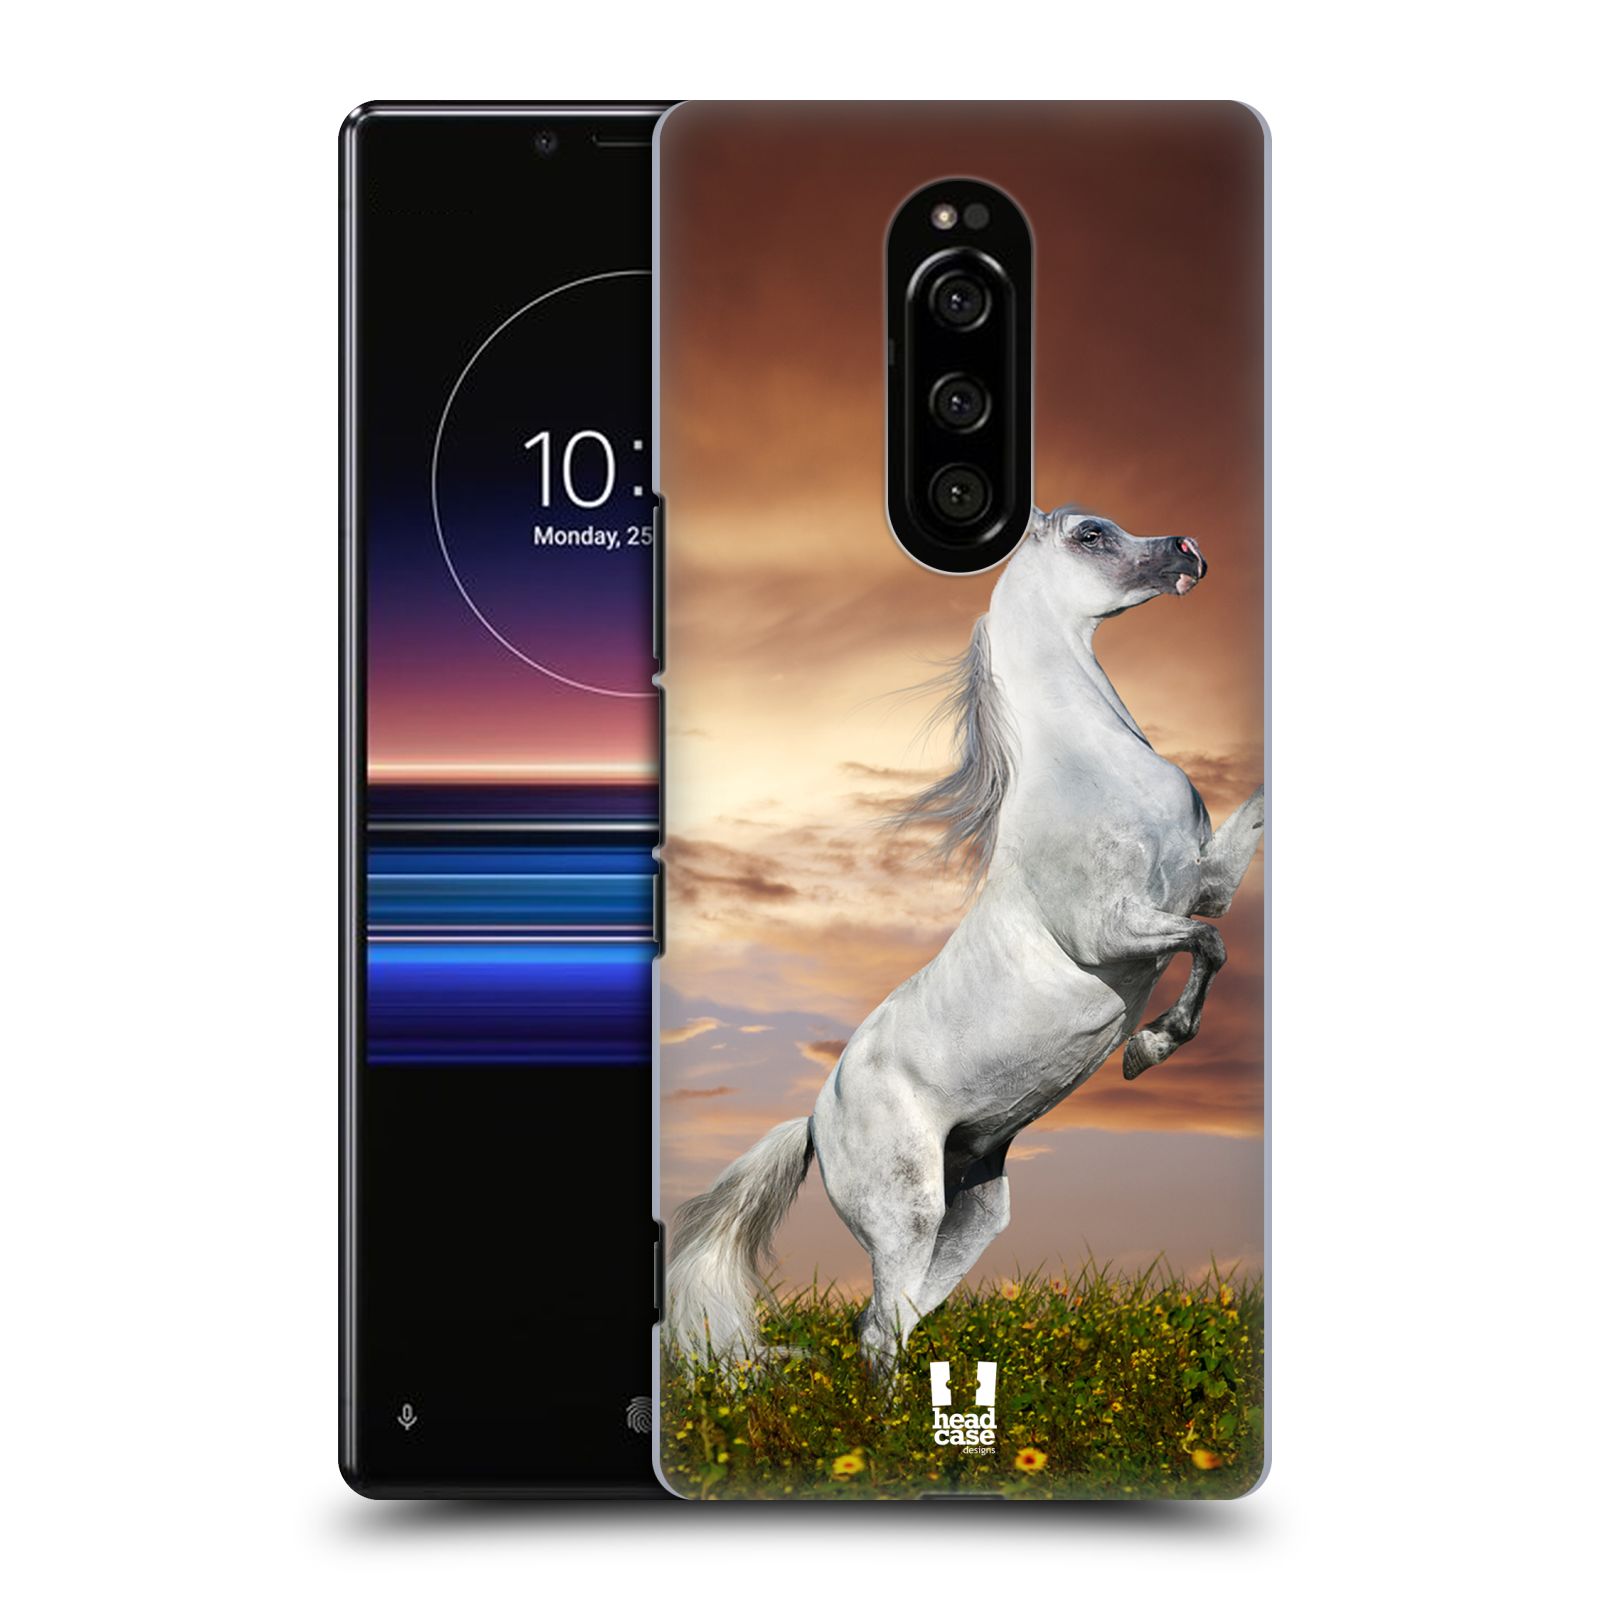 Zadní obal pro mobil Sony Xperia 1 - HEAD CASE - Svět zvířat divoký kůň